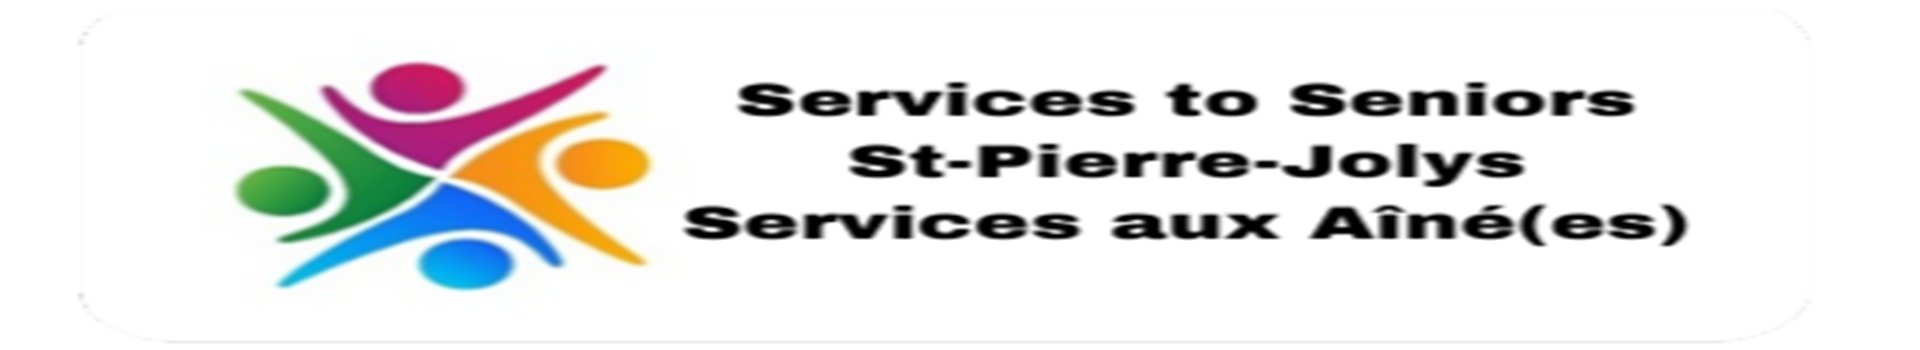 Services aux aînés - Services to Seniors - Newsletter